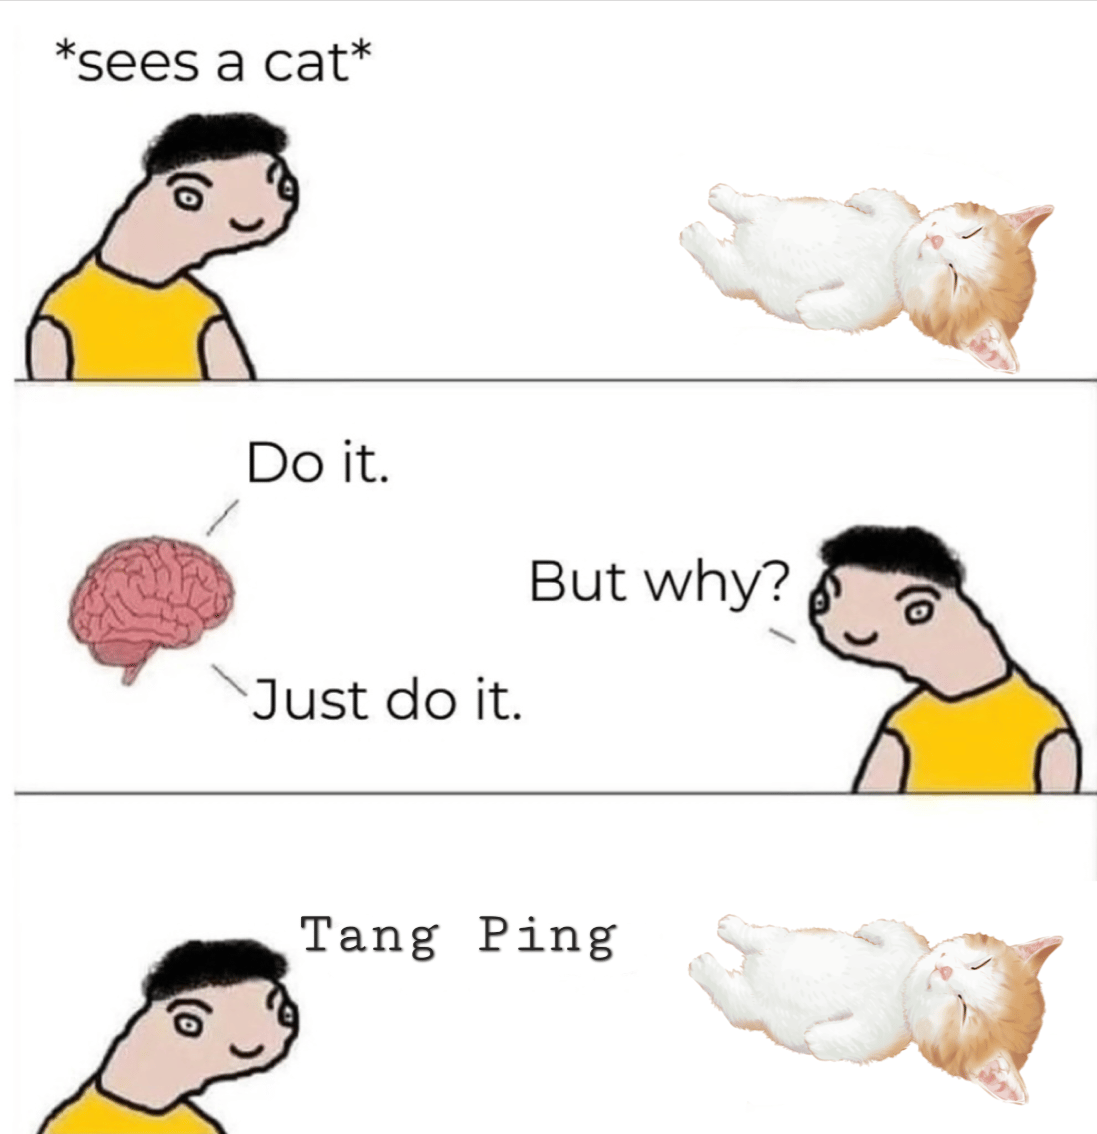 Tang ping think